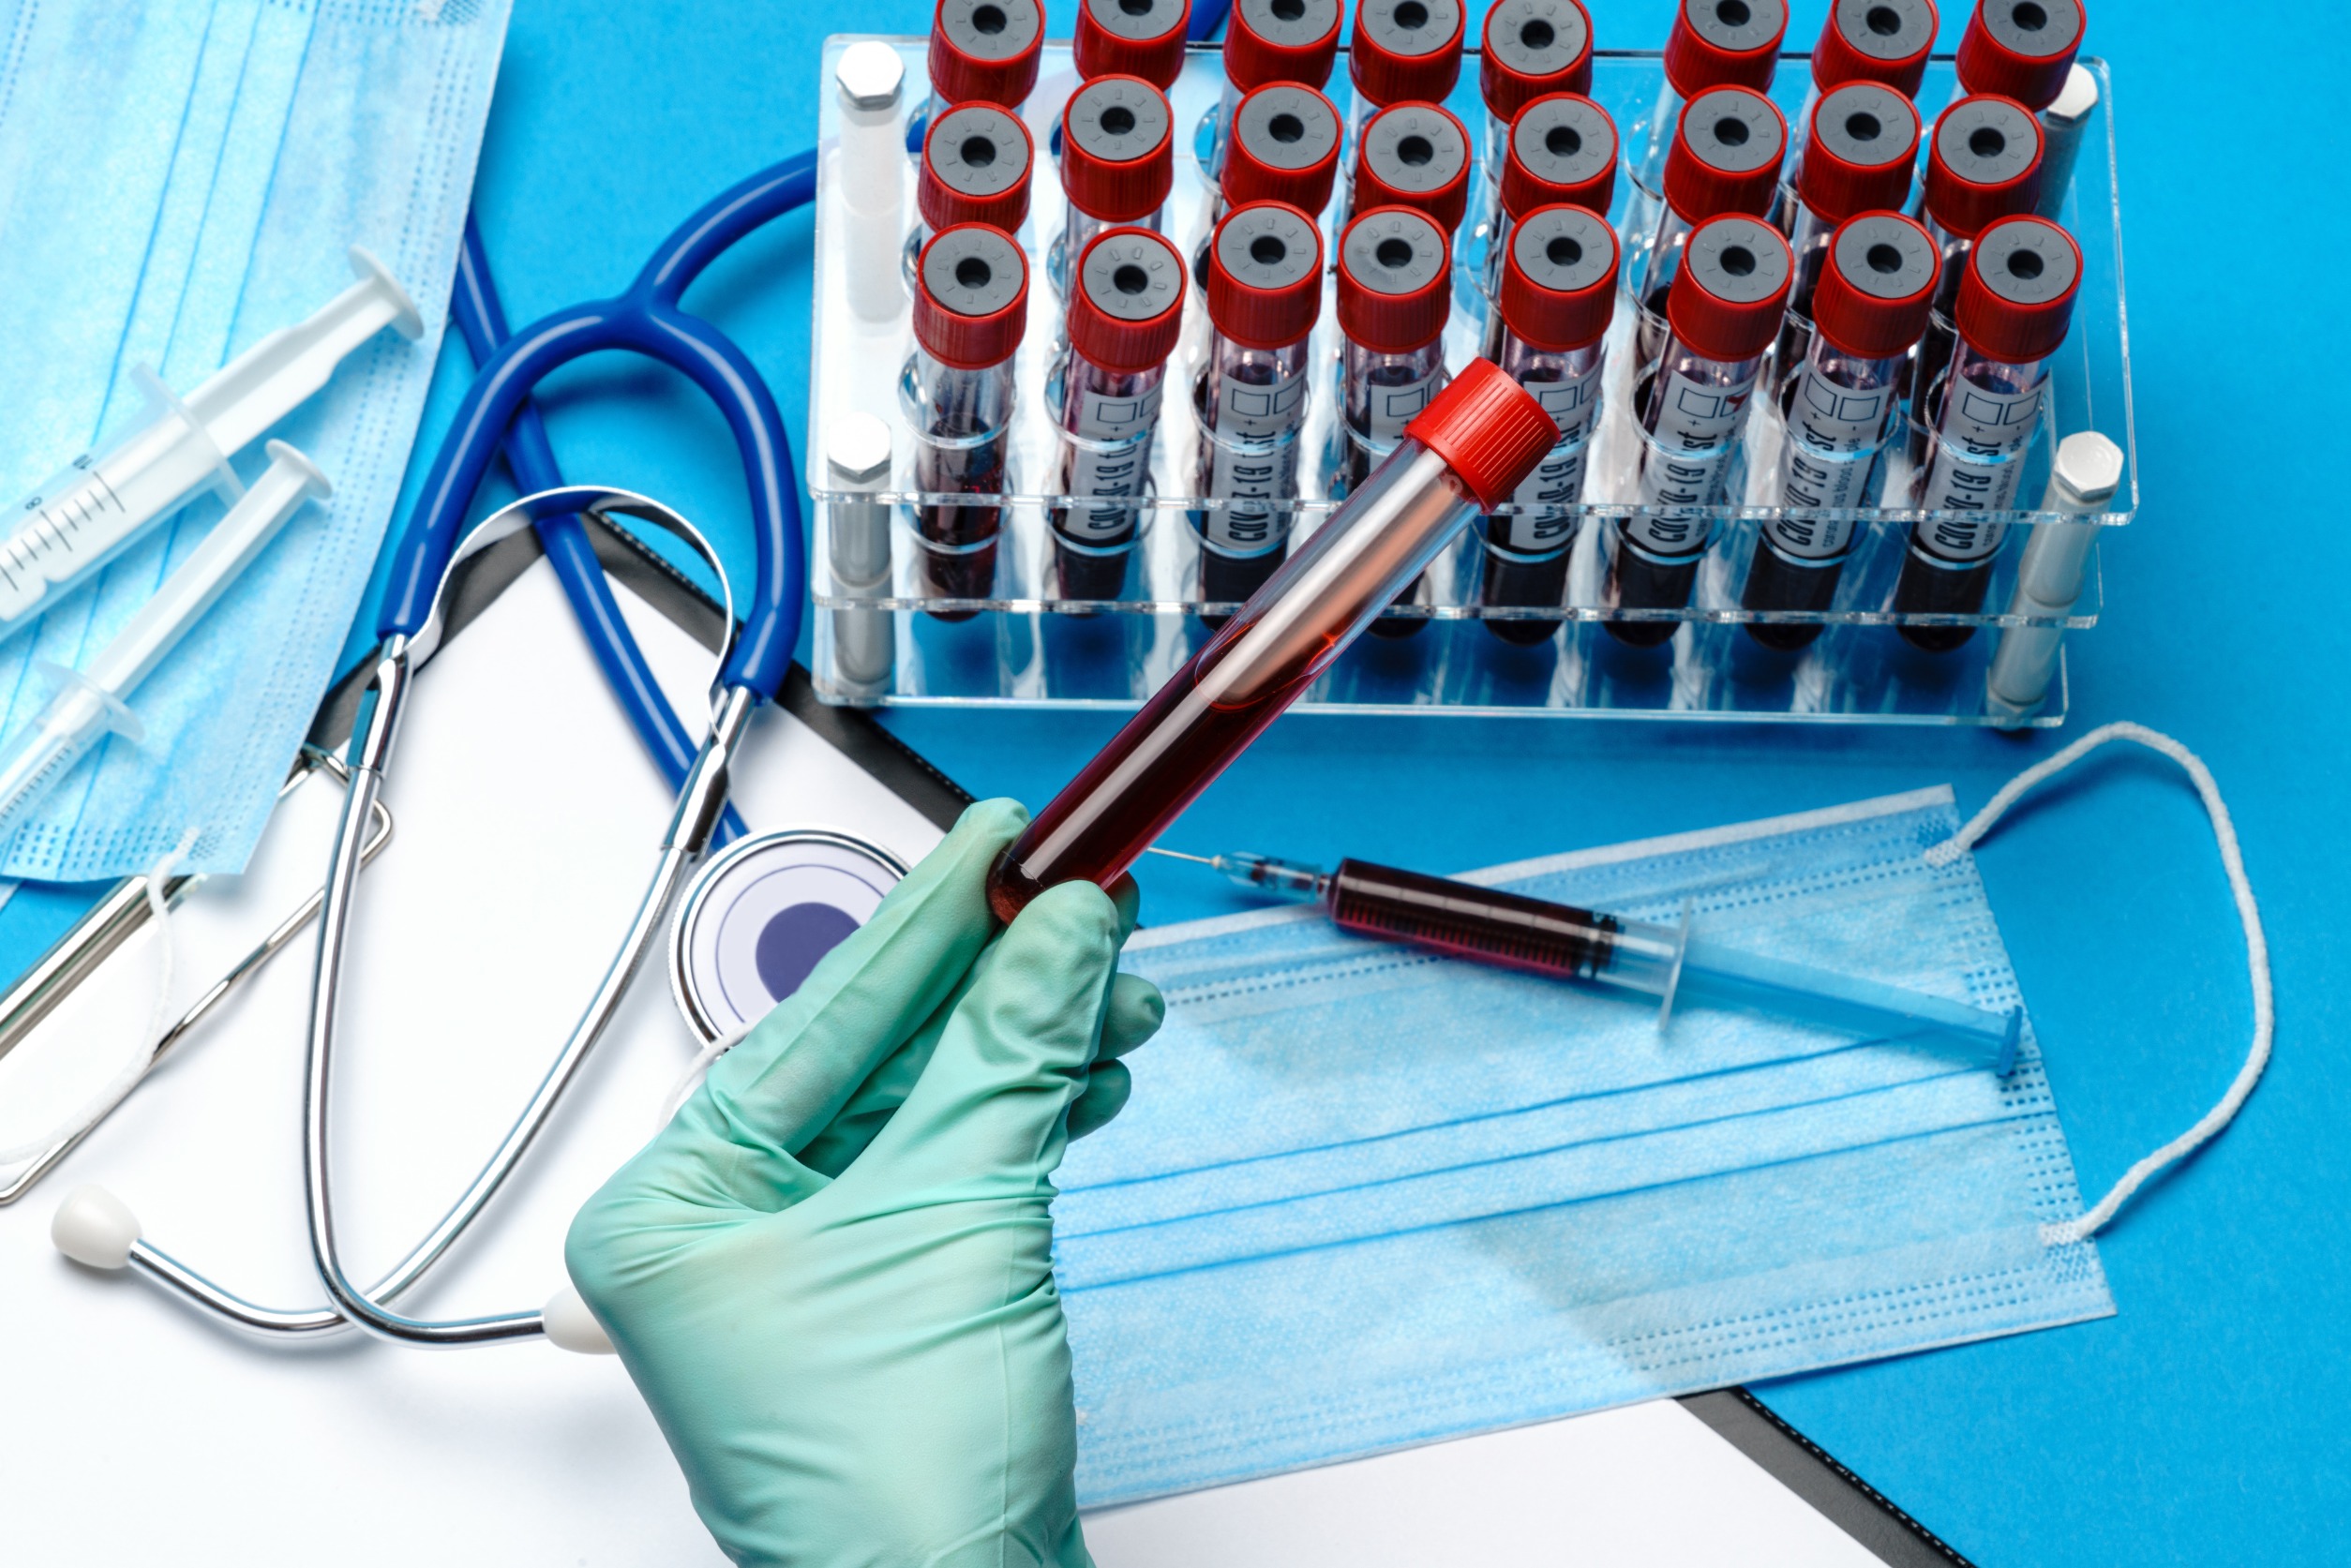 Analityk laboratoryjny trzyma w dłoni fiolkę z krwią pacjenta, w tle położone są różne akcesoria medyczne. /Źródło: 123rf.com